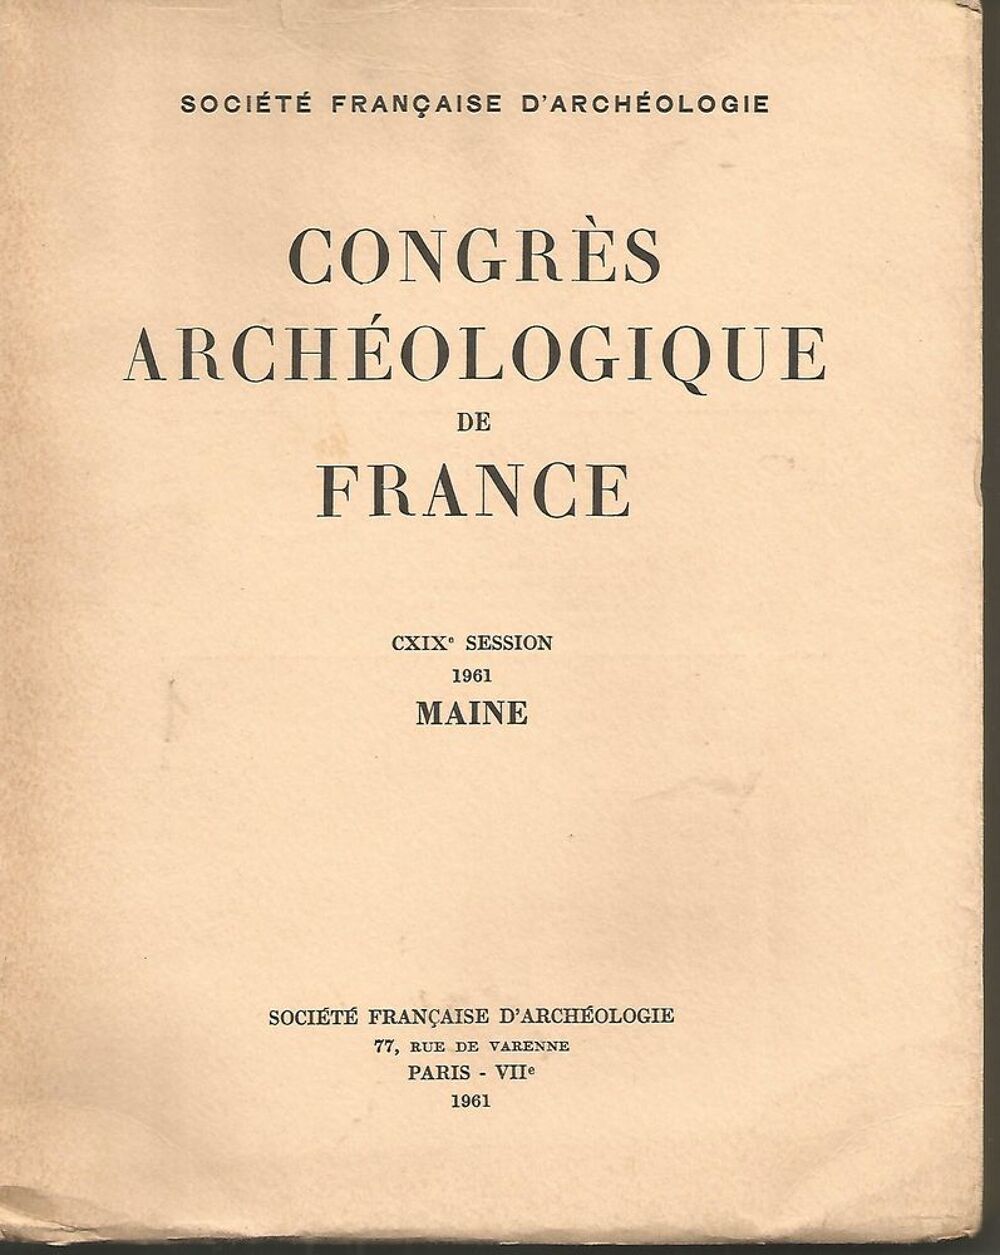 CONGRES ARCHEOLOGIQUE de FRANCE - 1961 - MAINE Livres et BD